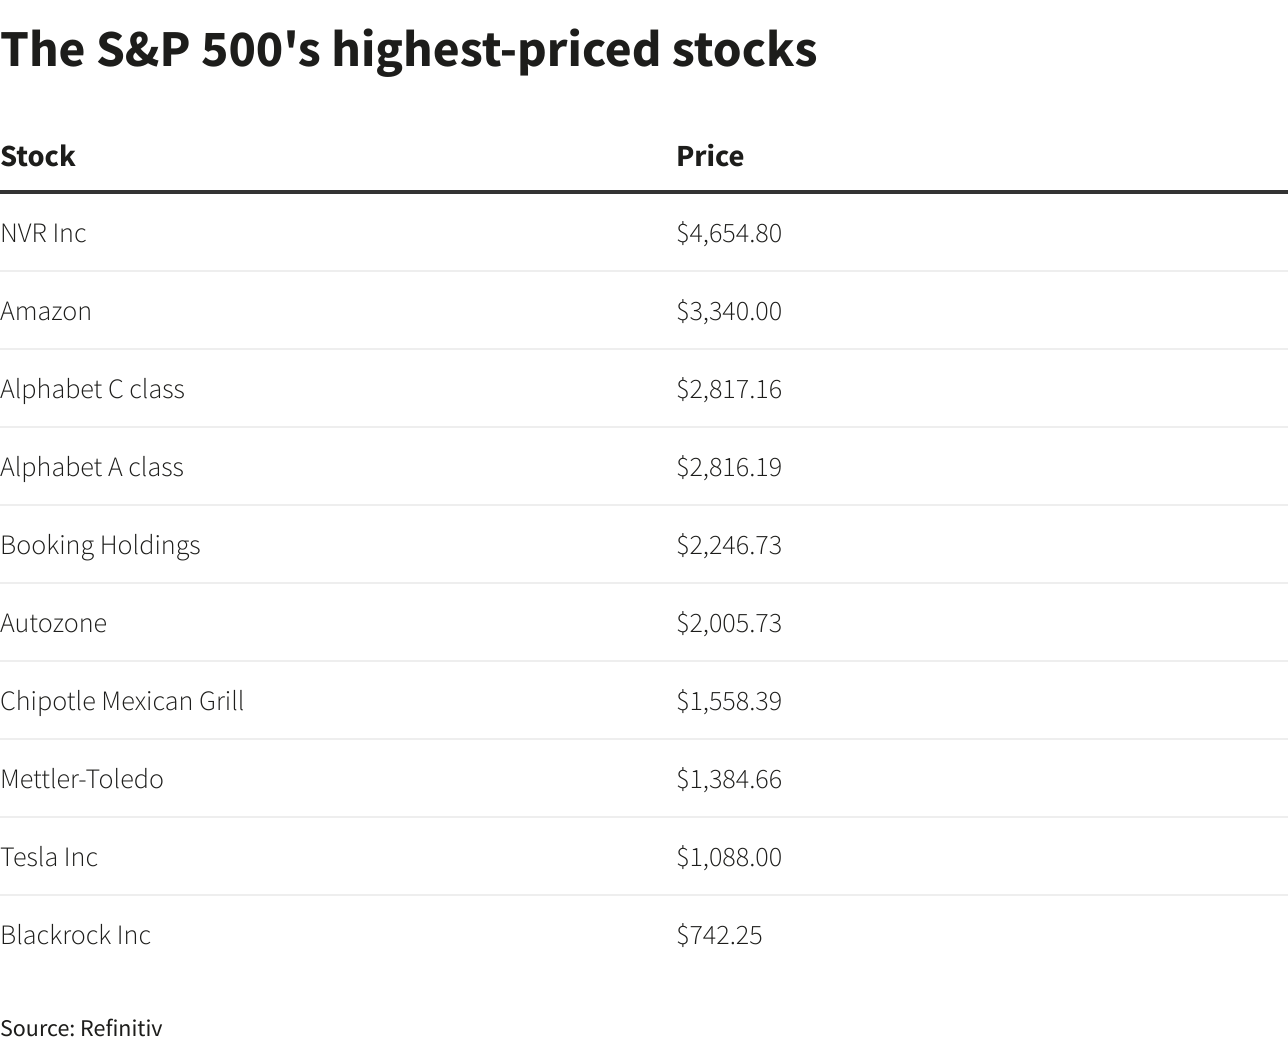 أغلى سهم في S&P 500